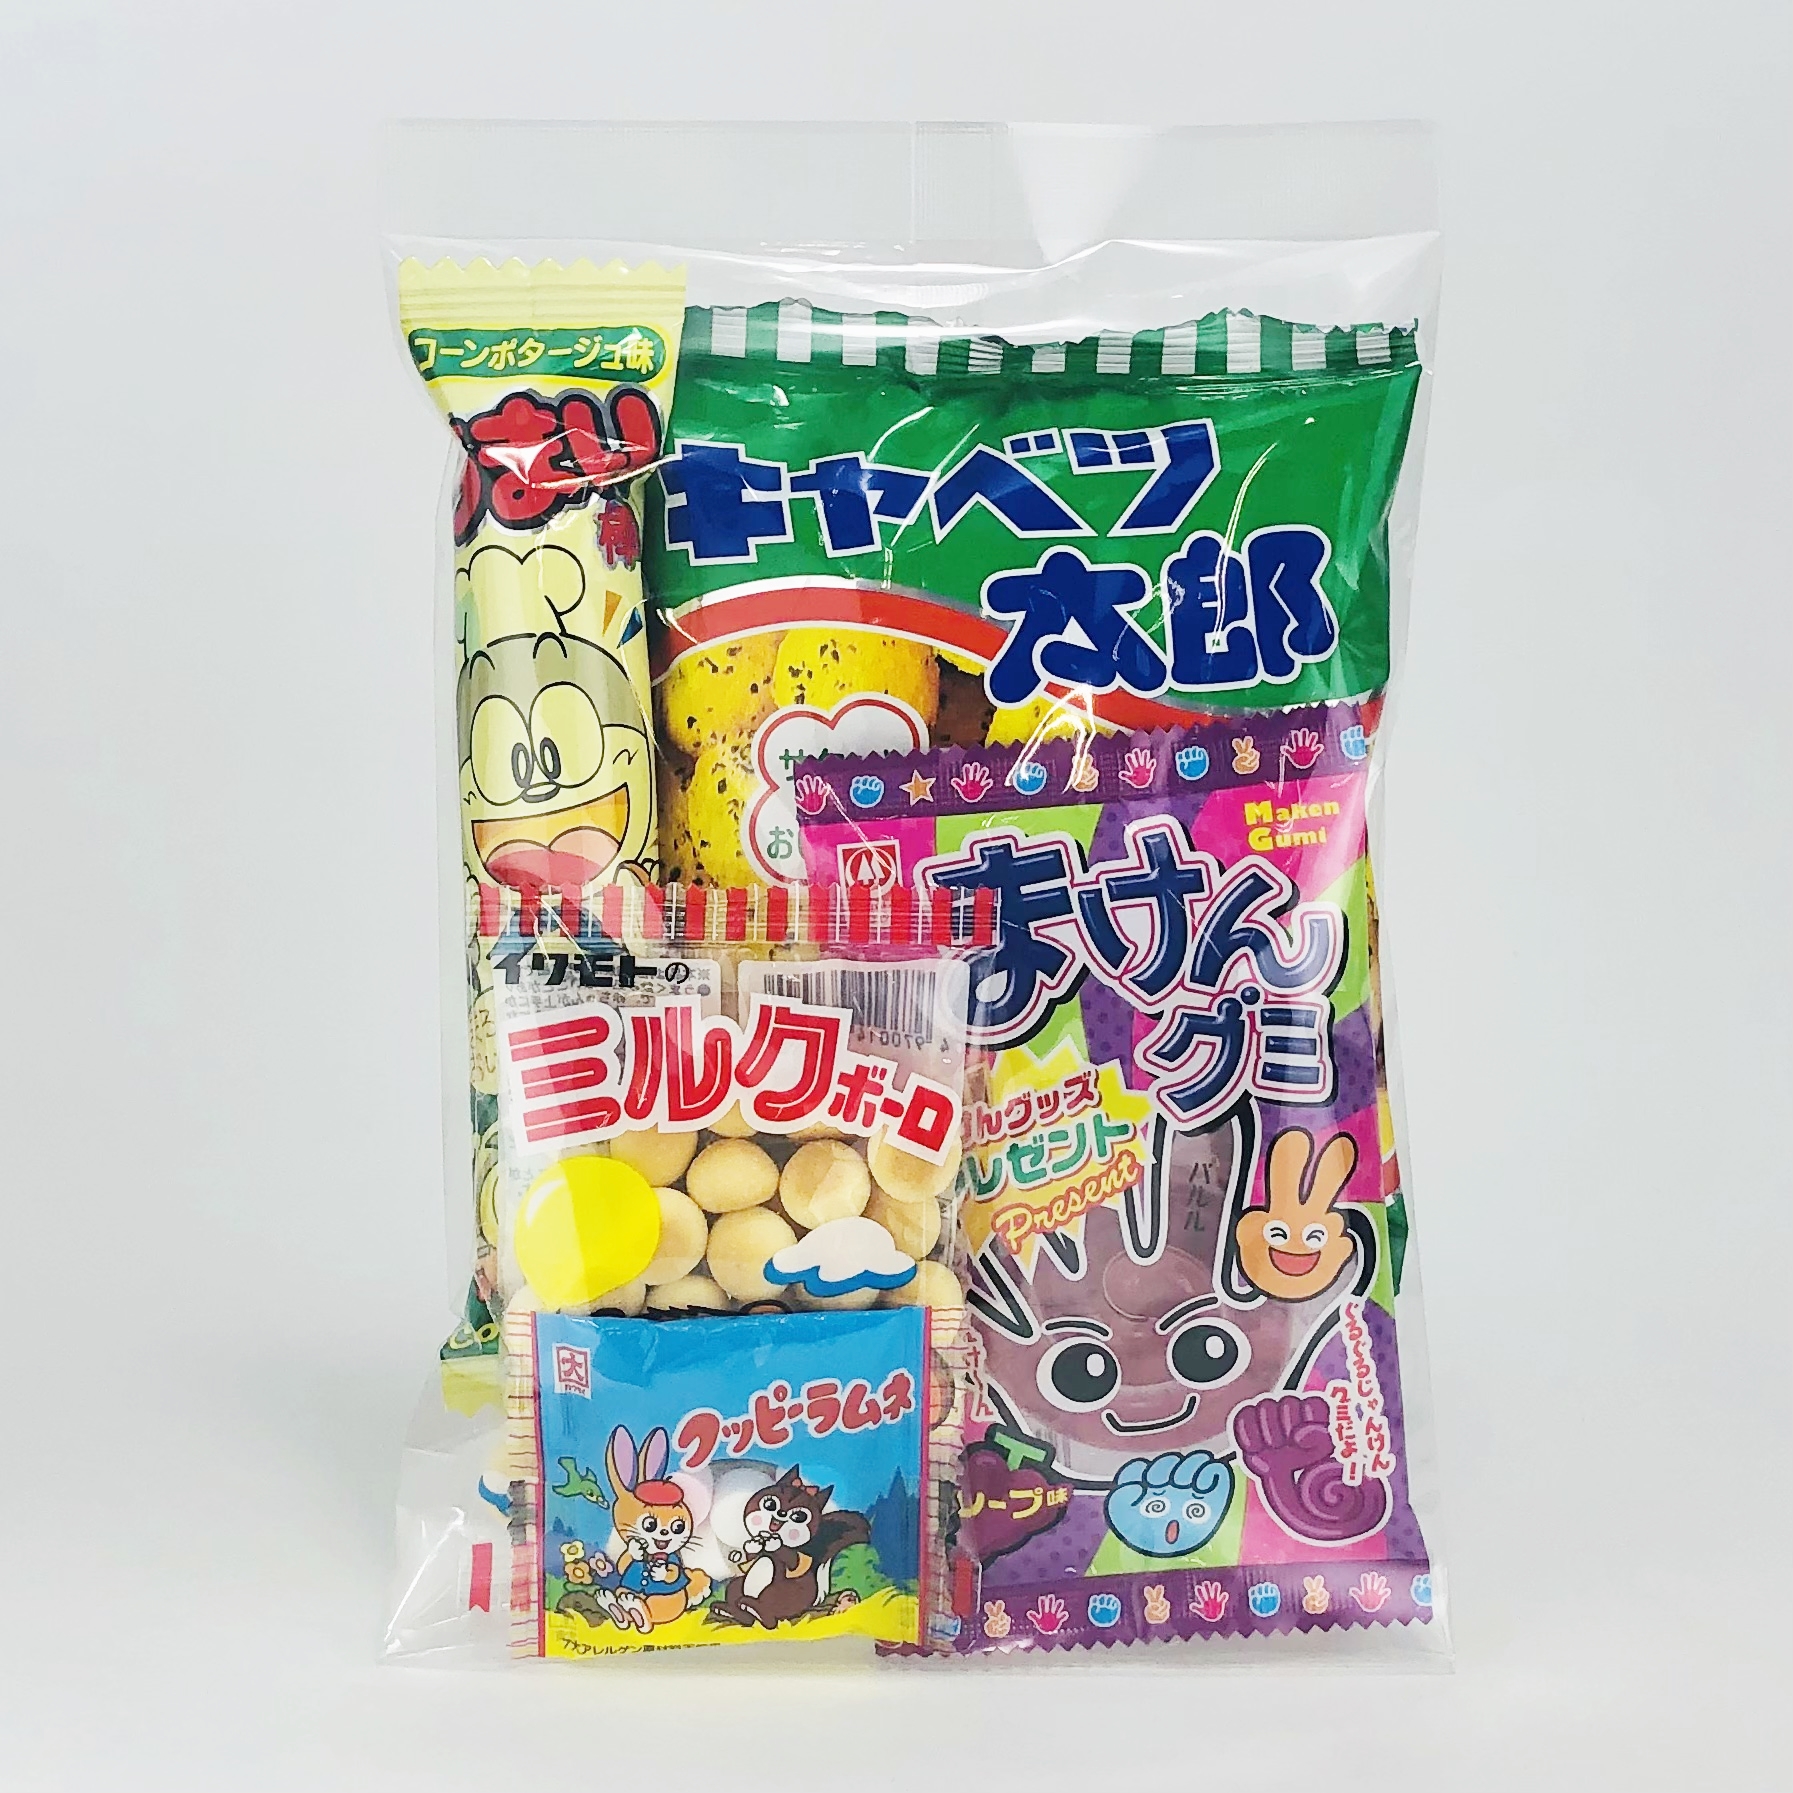 150円駄菓子袋詰め(春・夏)